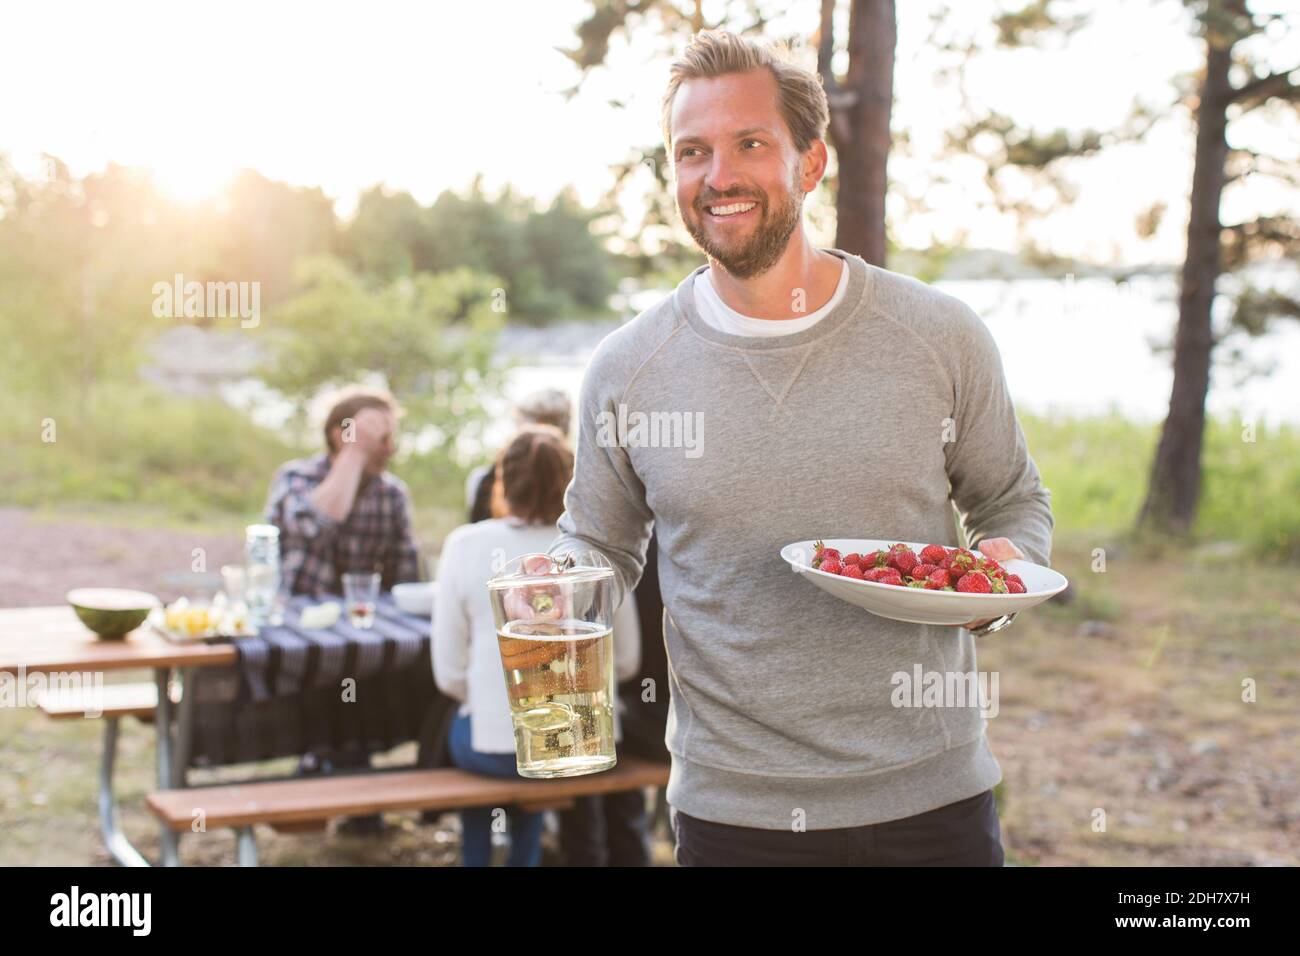 Felice uomo che tiene la brocca di birra e fragole con gli amici seduti al tavolo da picnic in background Foto Stock